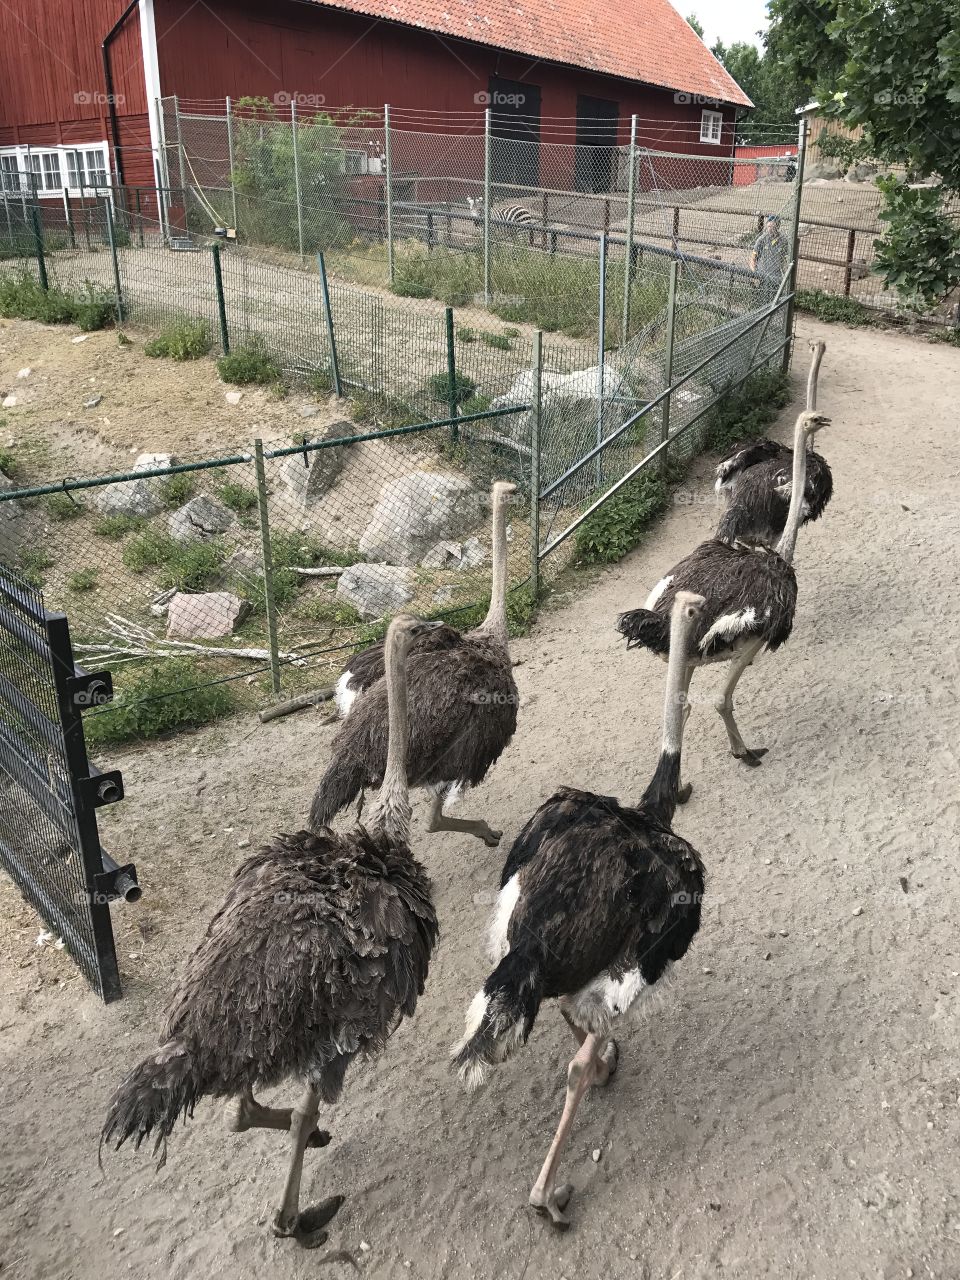 Storks in Sweden